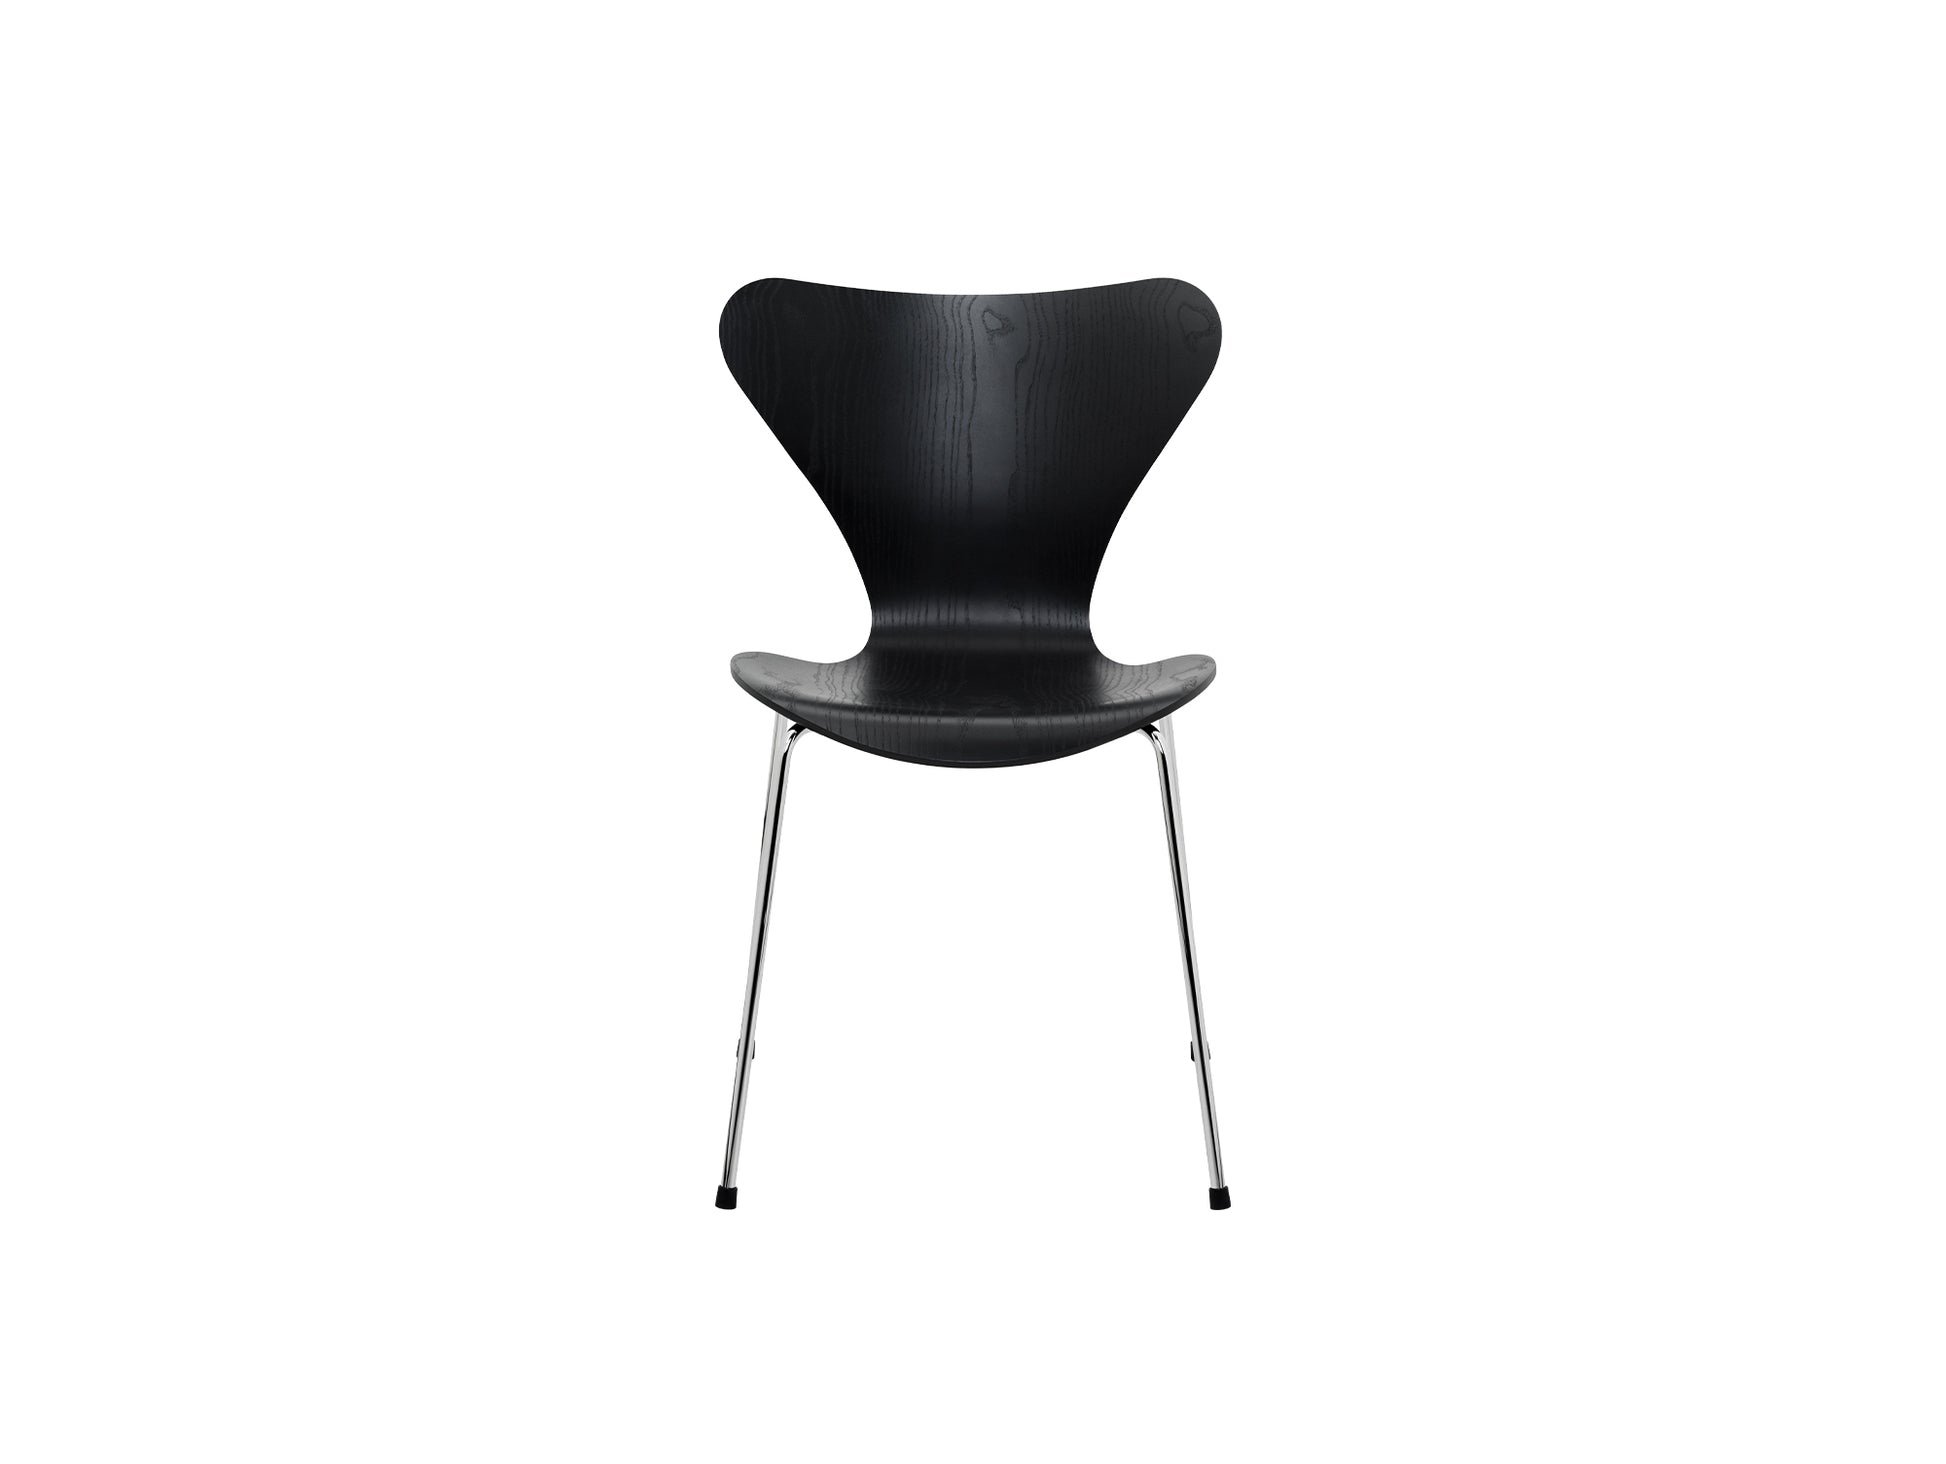 Series 7™ 3107 Dining Chair by Fritz Hansen - Black Coloured Ash Veneer Shell / Chromed Steel